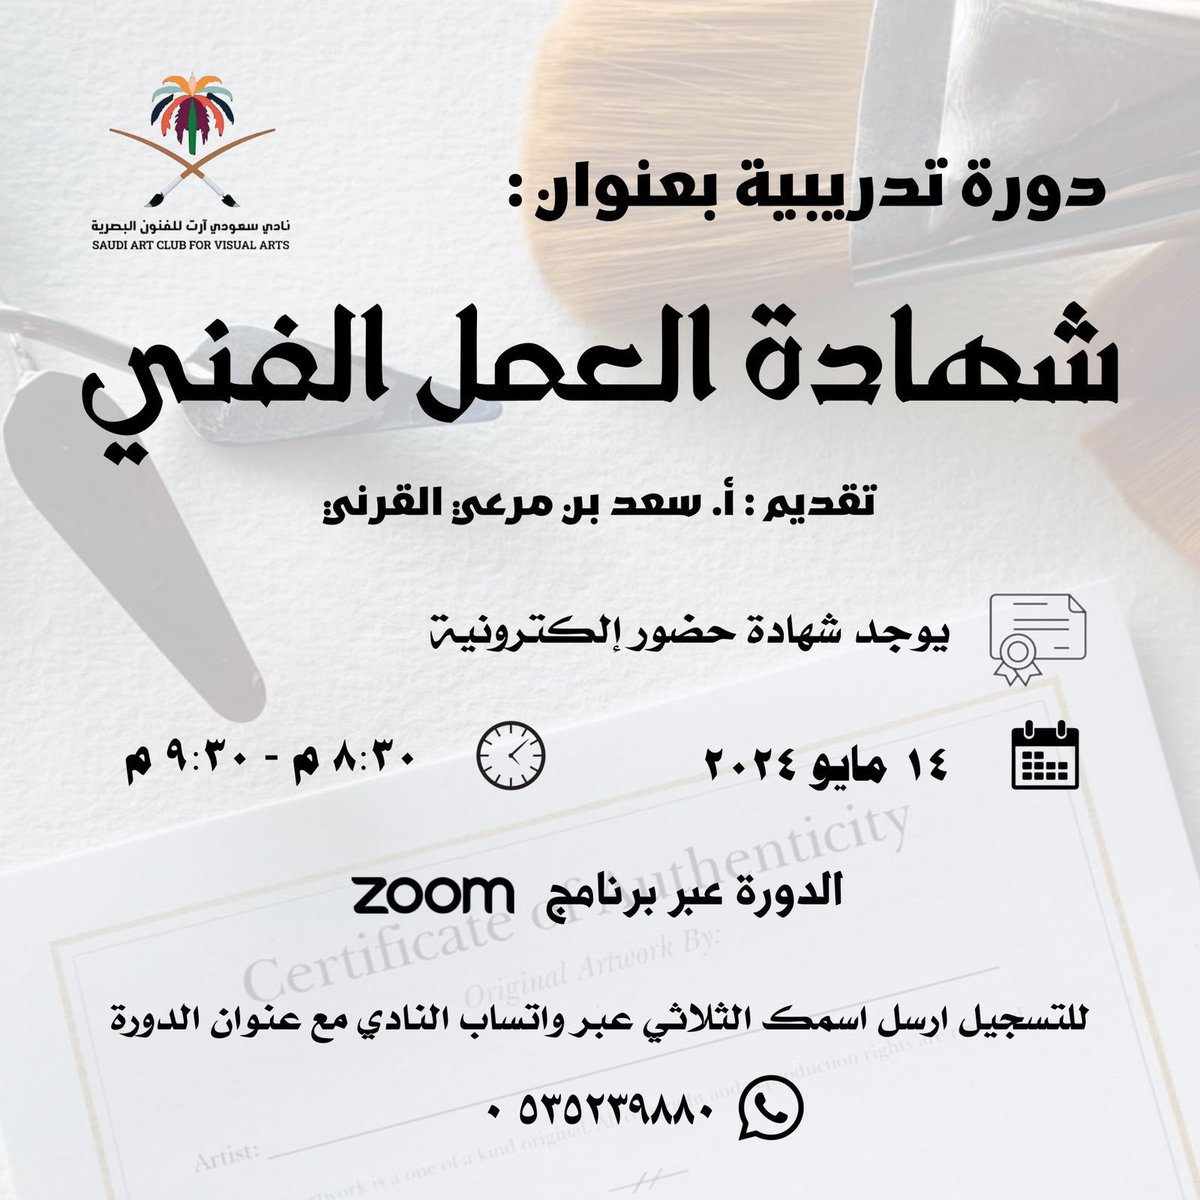 شهادة العمل الفني 🎨
دورة يقدمها رئيس نادي سعودي آرت
أ.سعد القرني عبر الزوم في ١٤ مايو 
يوجد شهادات حضور  🔖
@saudiartclub
#أخبار_الفنون #دورات_تدريبية